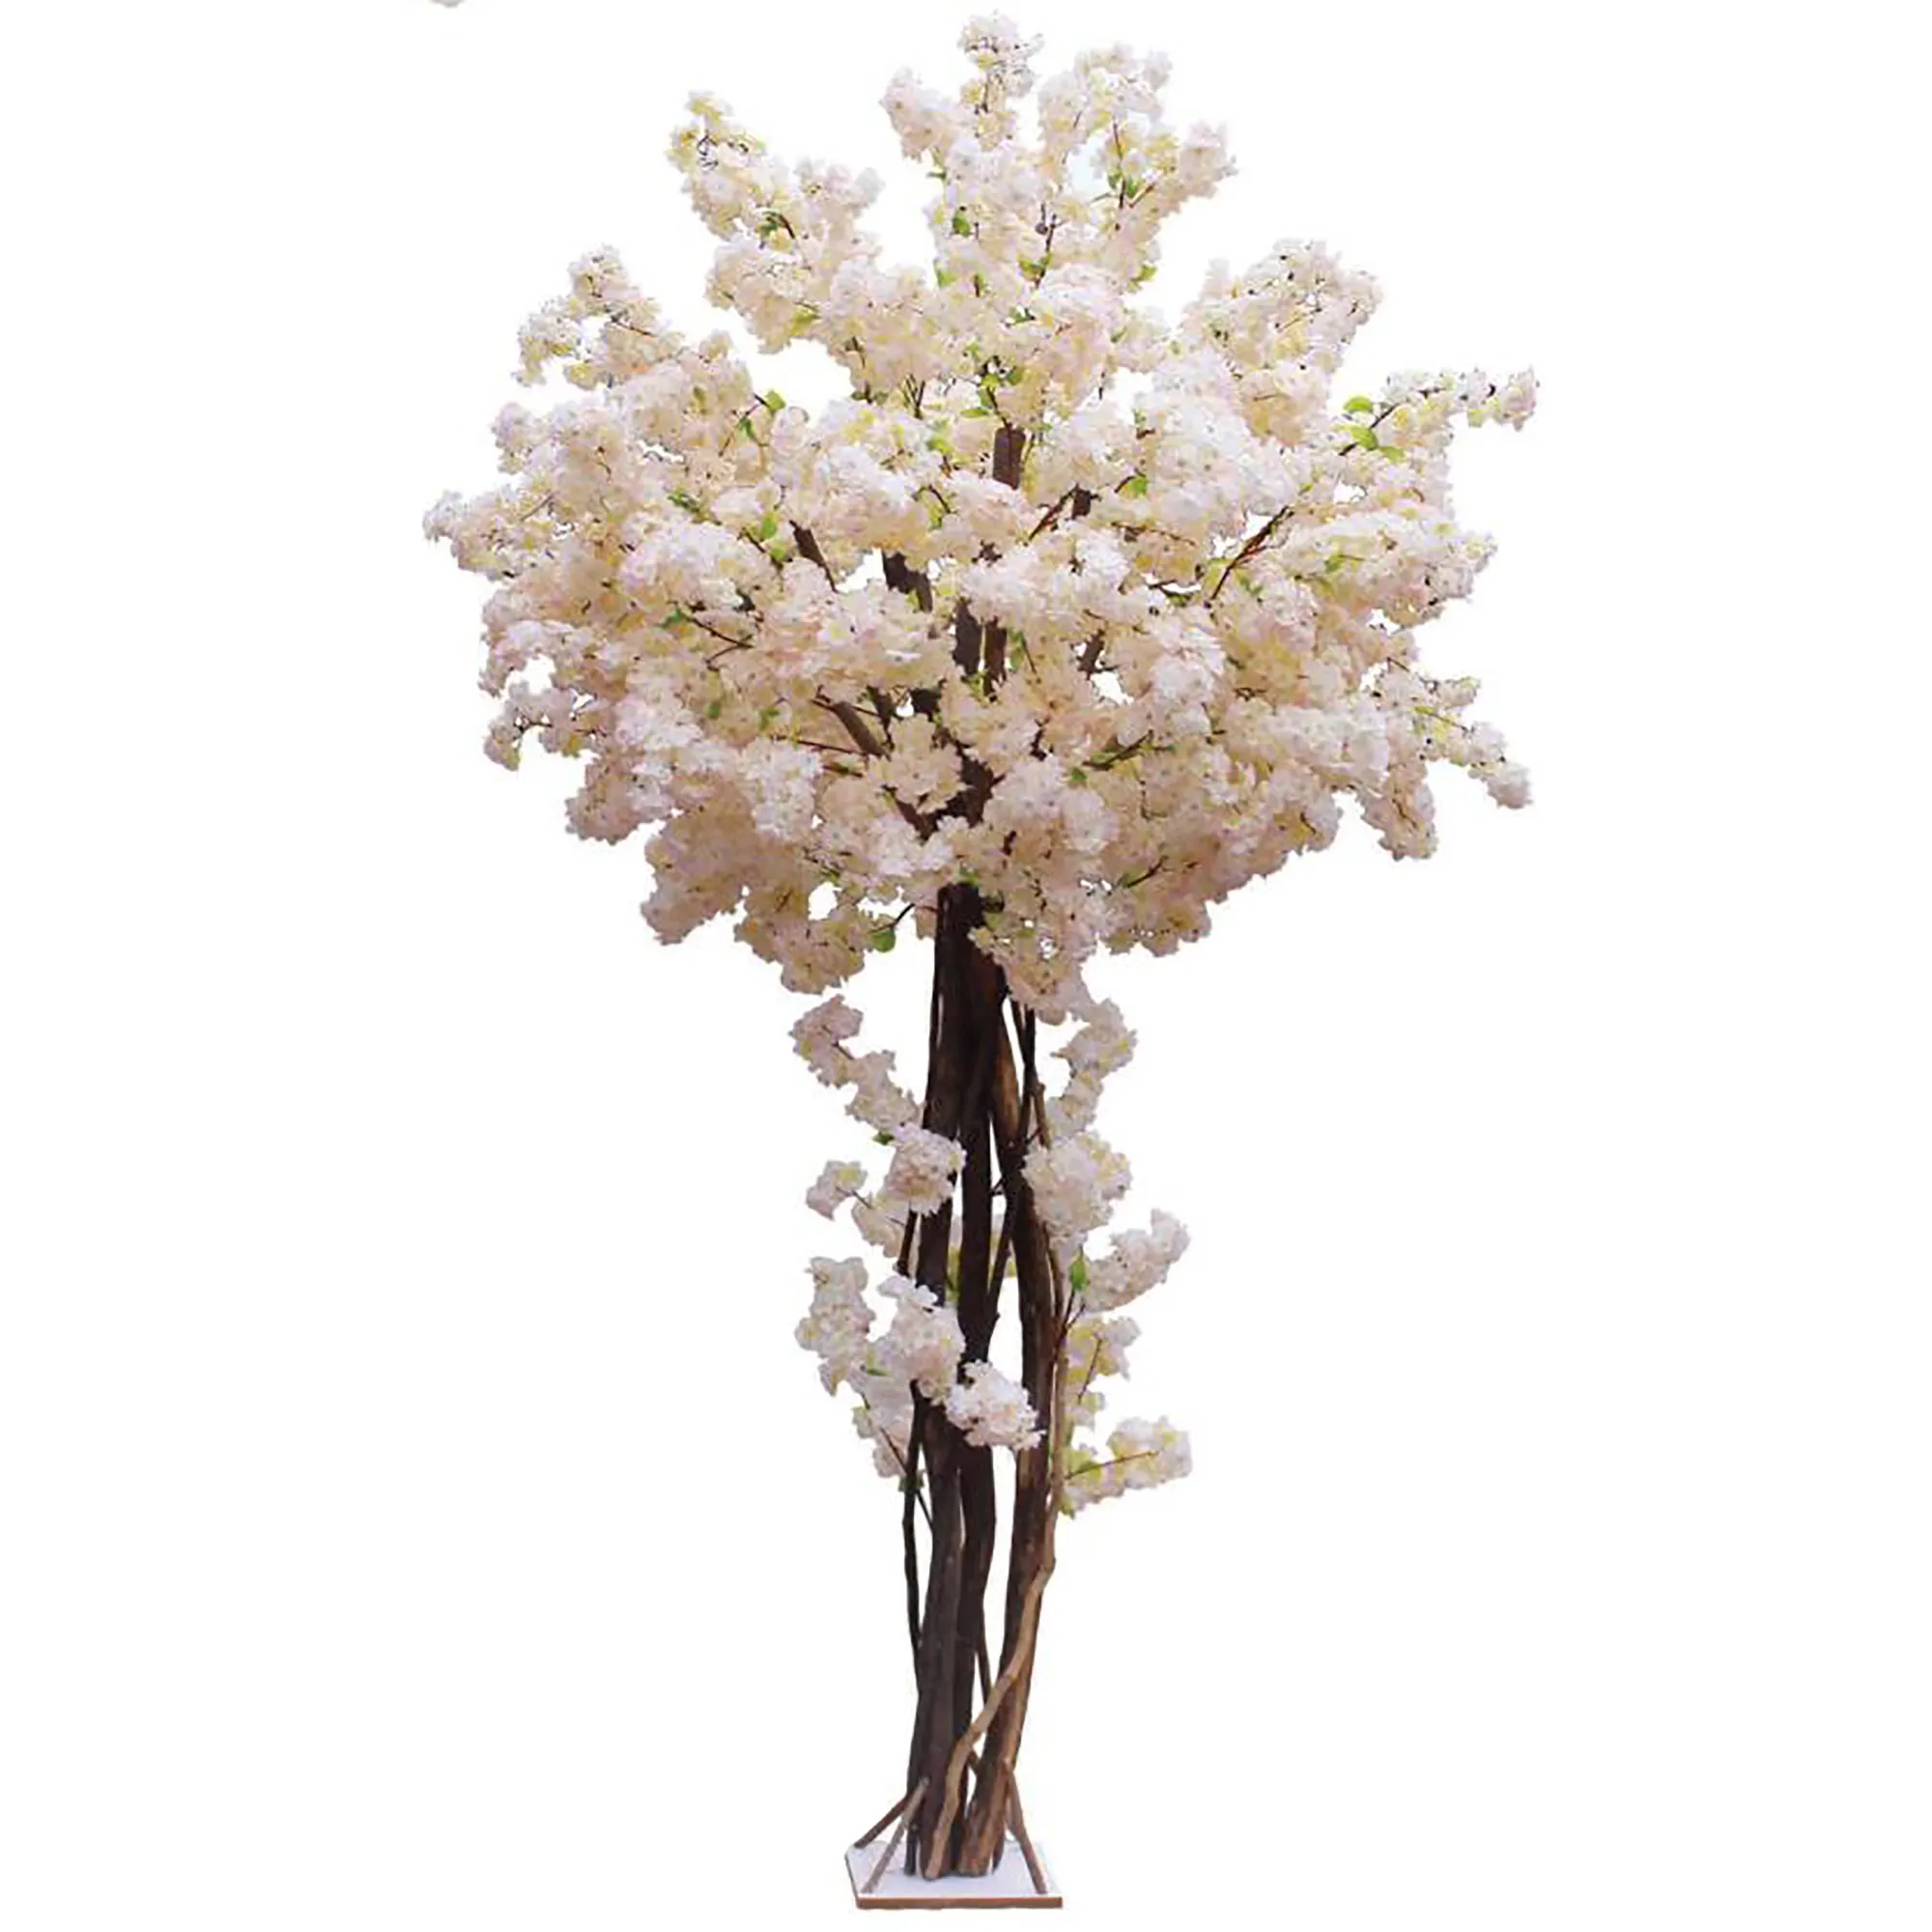 Linwooフラワーツリー人工装飾屋外屋内人工植物結婚式のための桜の木